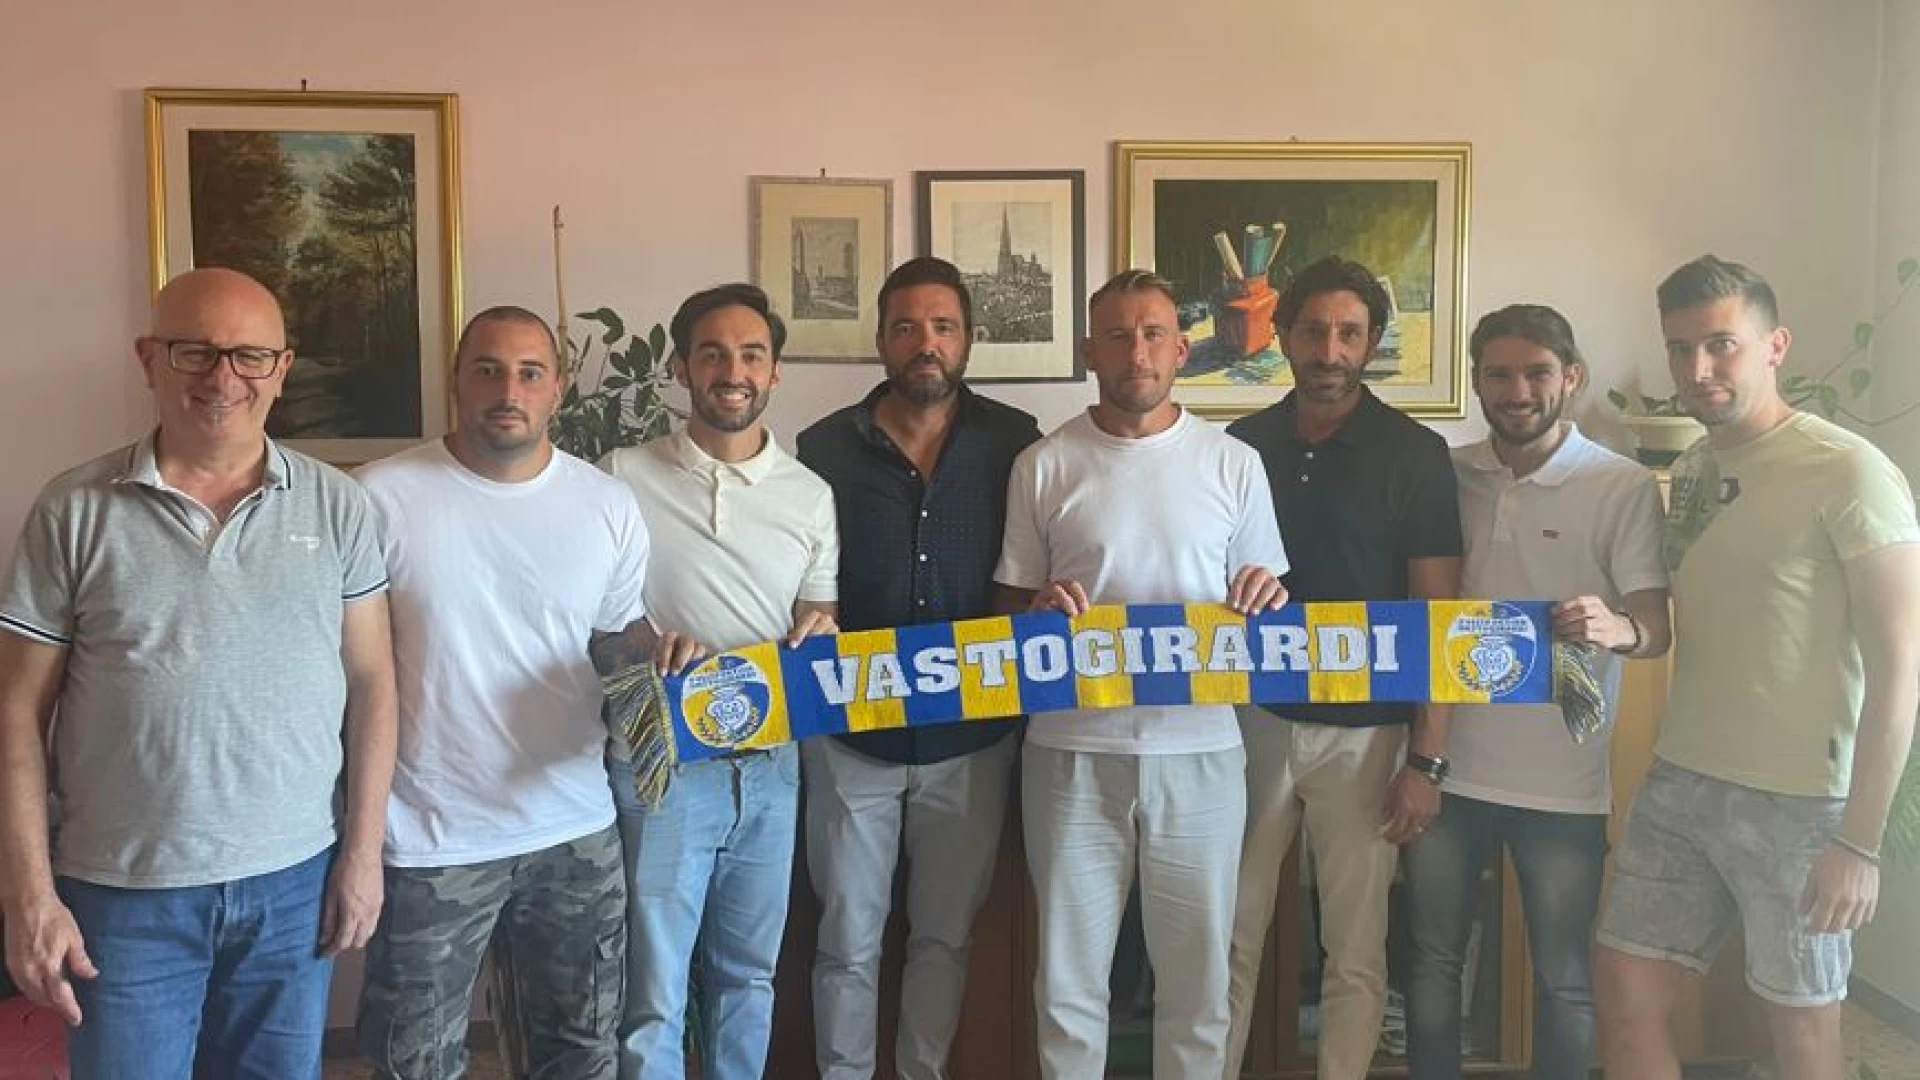 Serie D, Girone F: il Vastogirardi dopo il nuovo mister Coletti, presenta un giovanissimo sfaff tecnico.